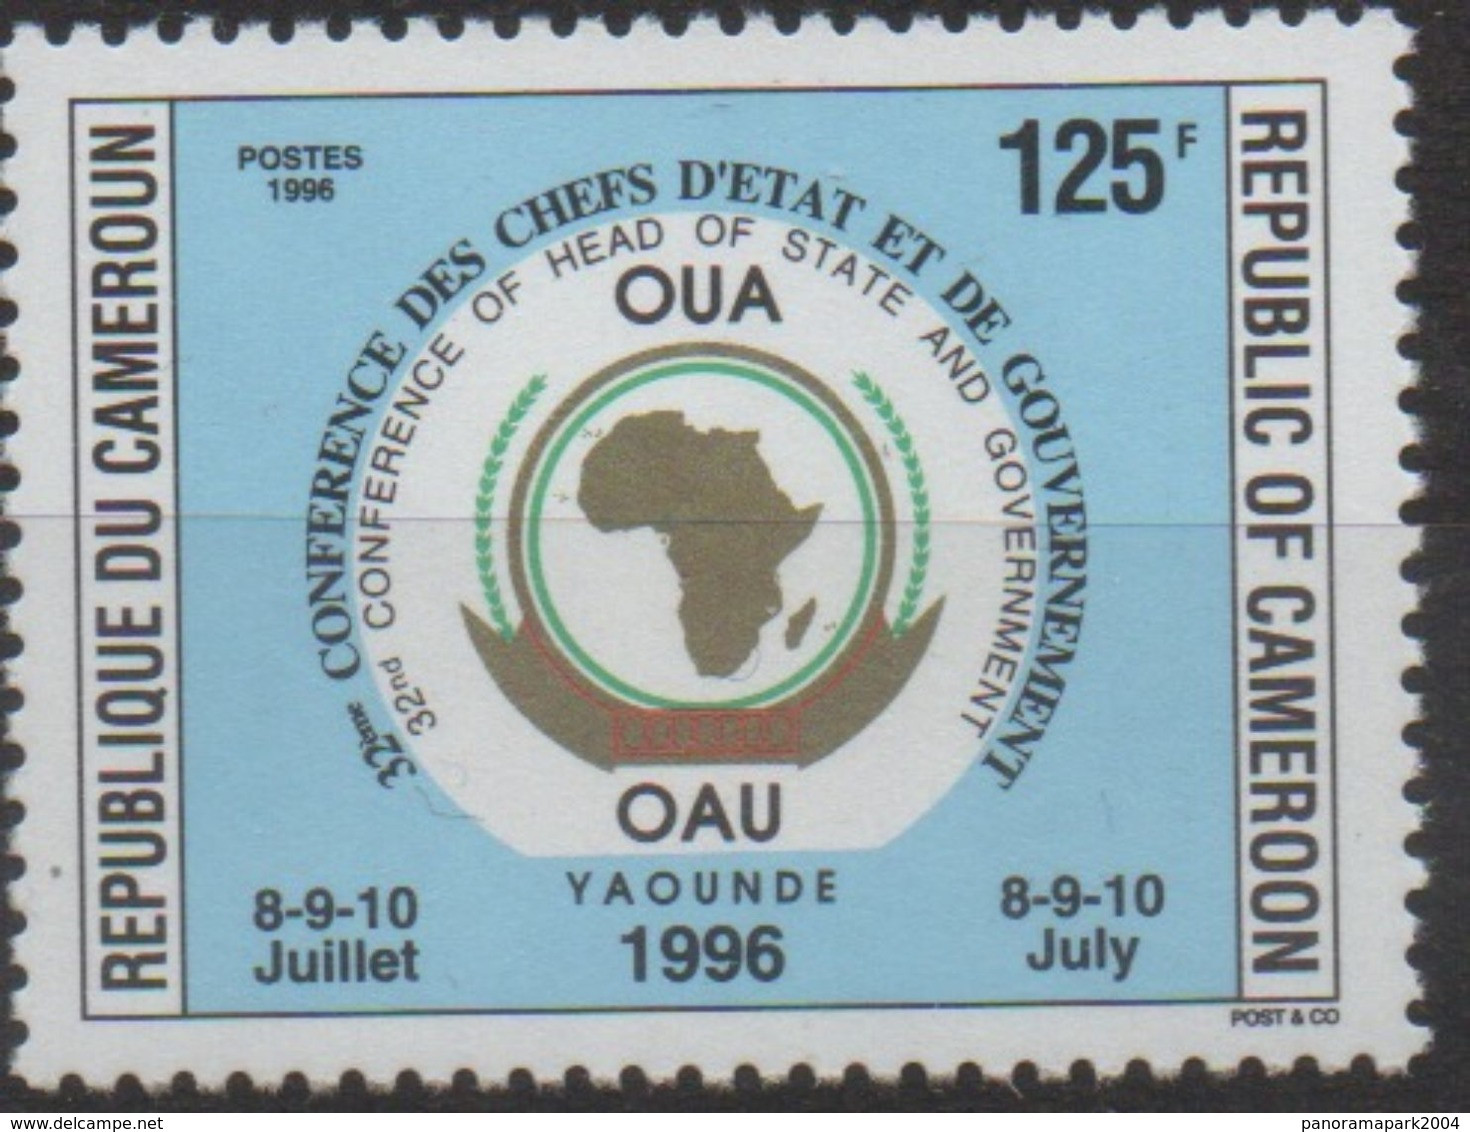 Cameroun Cameroon Kamerun 1996 125F Mi. 1221 OAU OUA Map Landkarte Carte Conférence Chefs D'Etat 8-9-10 Juillet - Camerún (1960-...)